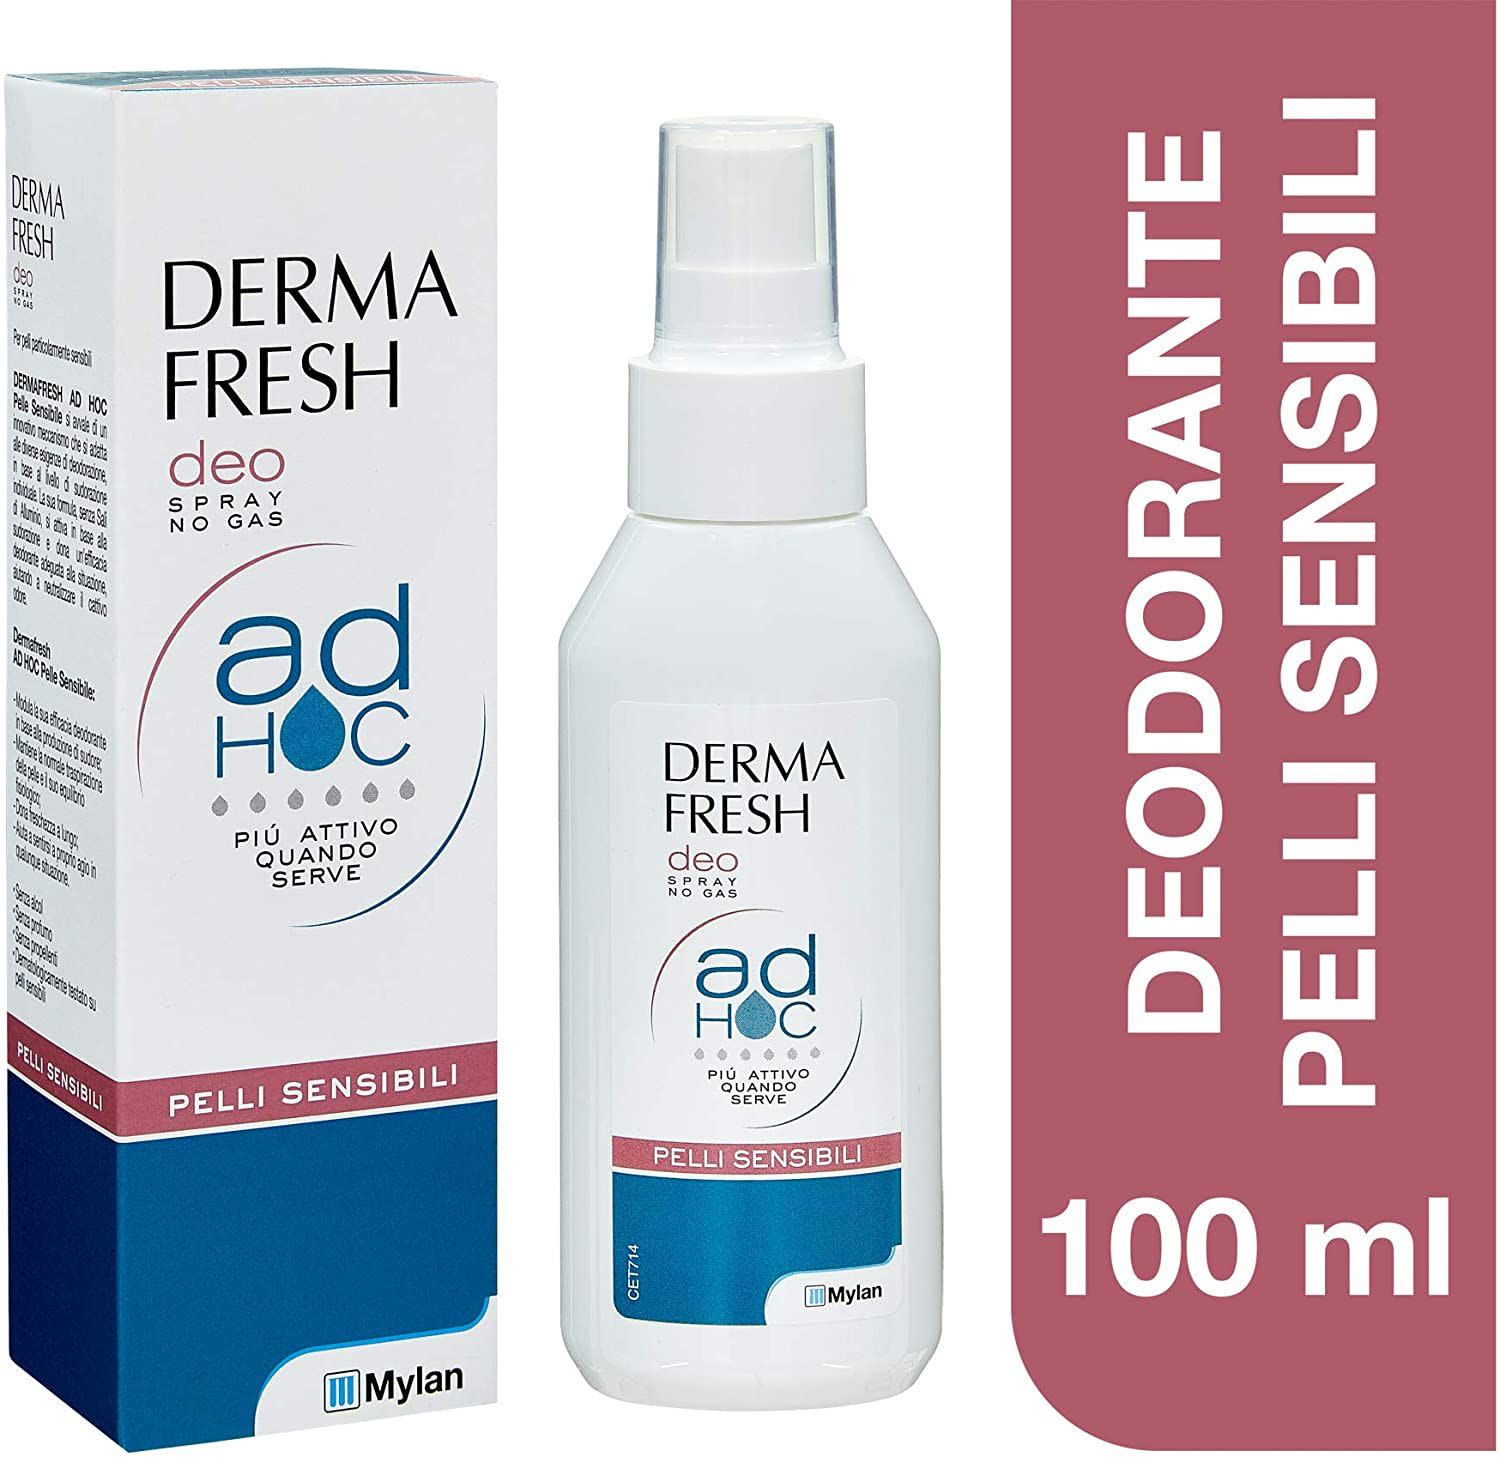 942599566 - Dermafresh Ad Hoc deodorante spray per pelli particolarmente sensibili 100ml - 4703375_3.jpg